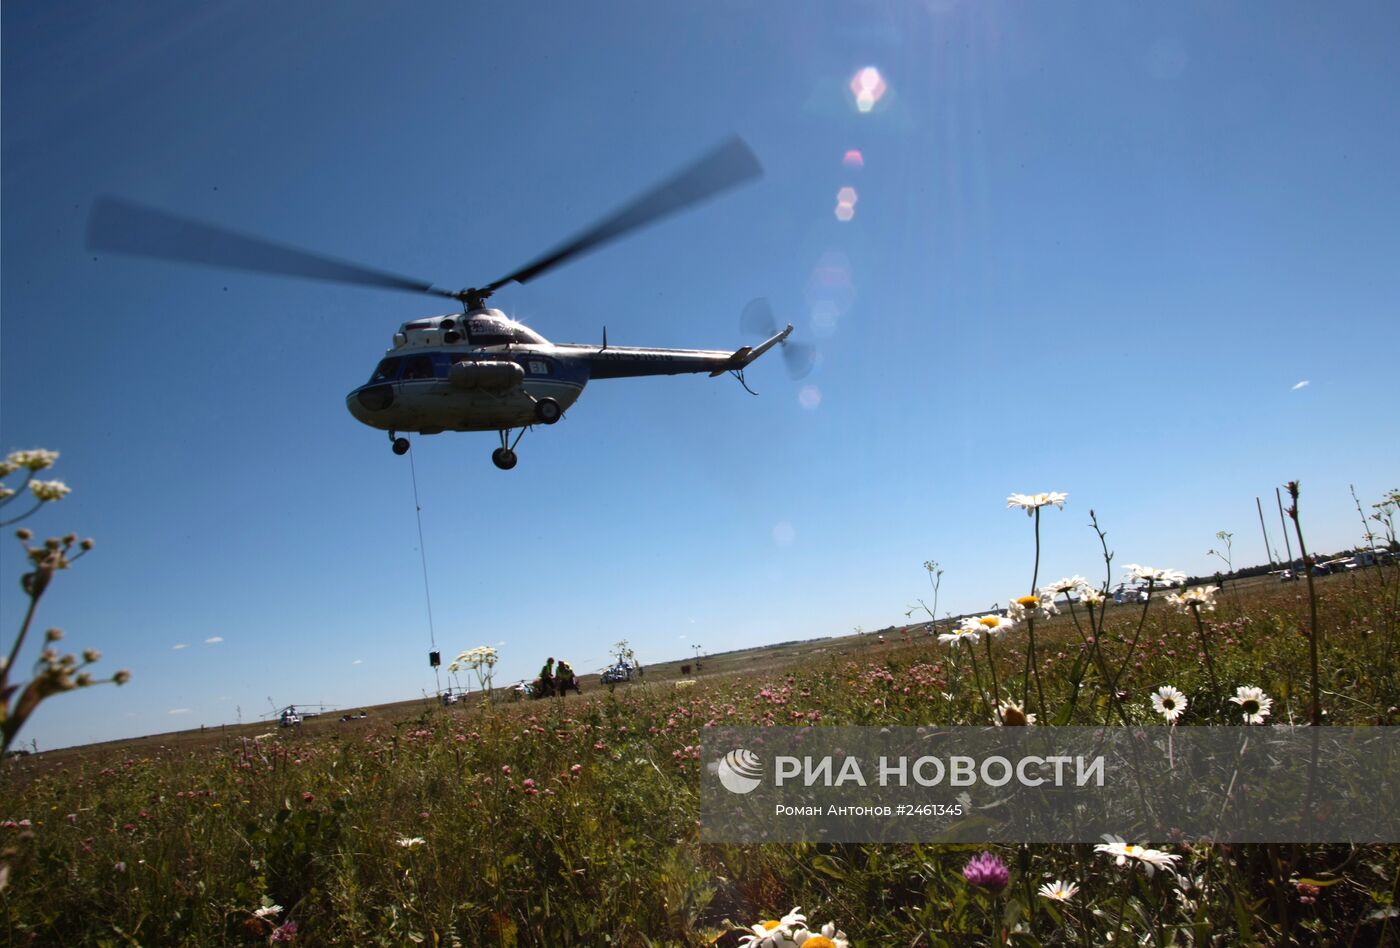 49-й открытый чемпионат России по вертолетному спорту